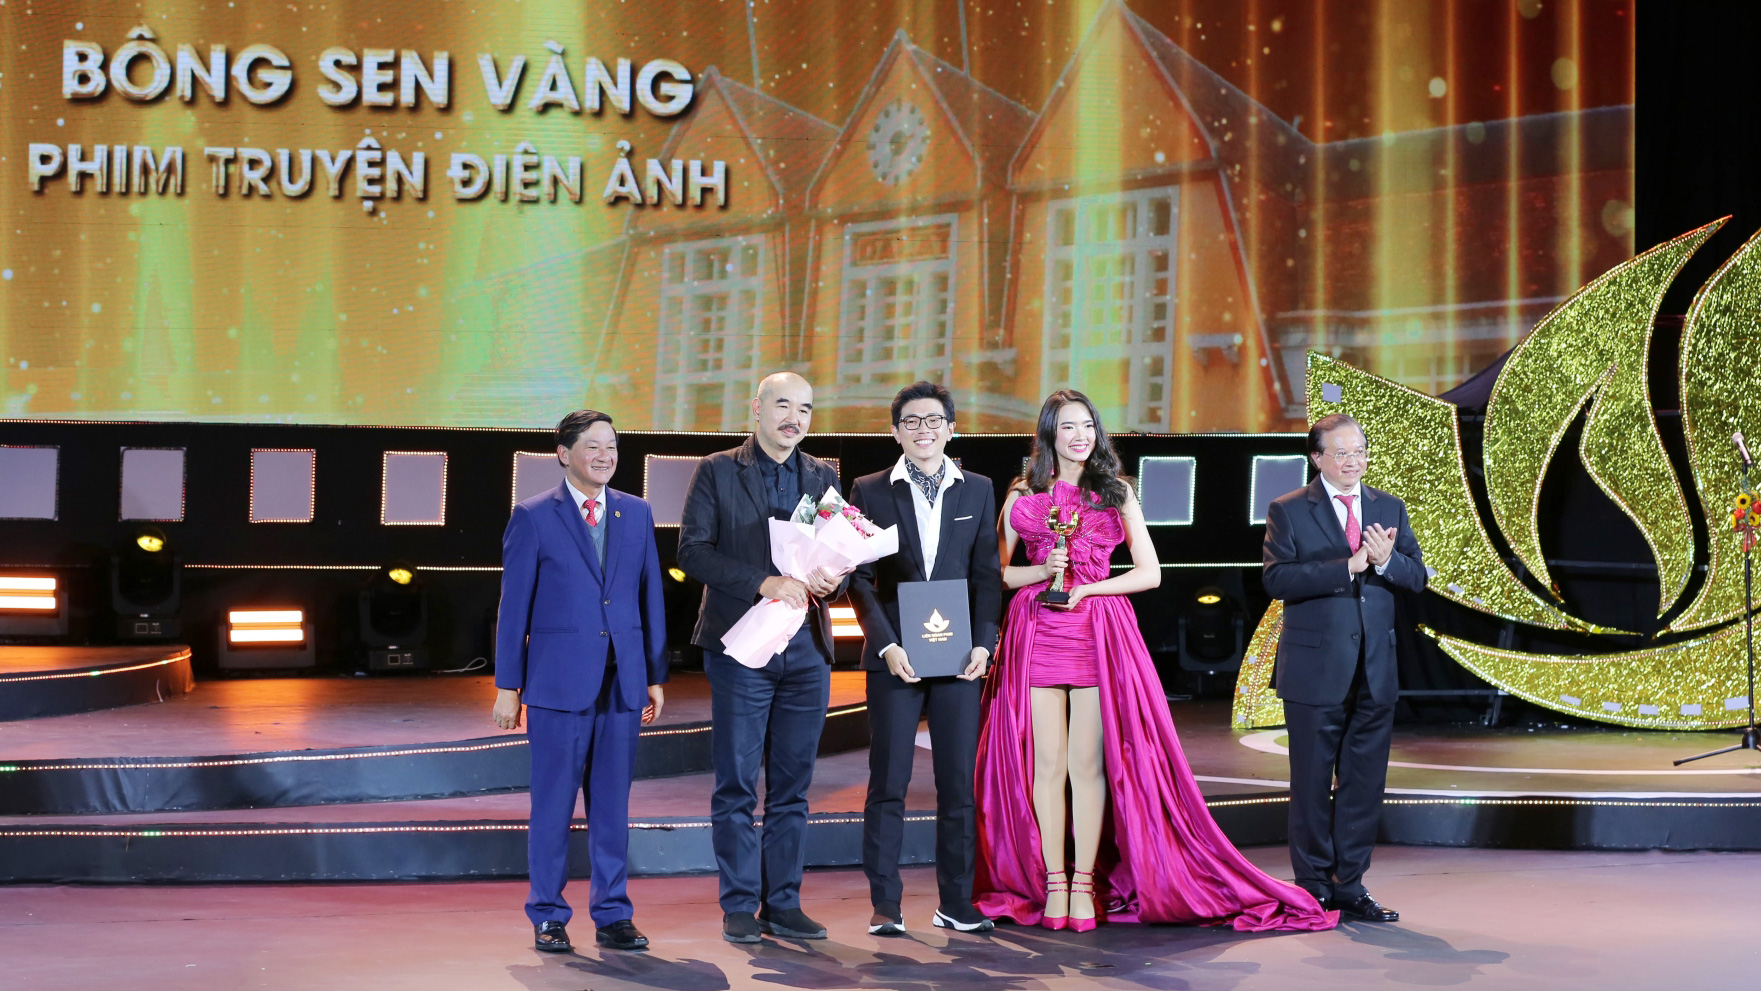 Bí thư Tỉnh ủy Lâm Đồng Trần Đức Quận và Thứ trưởng Bộ VH-TT-DL Tạ Quang Đông trao giải Bông sen vàng Phim truyện điện ảnh